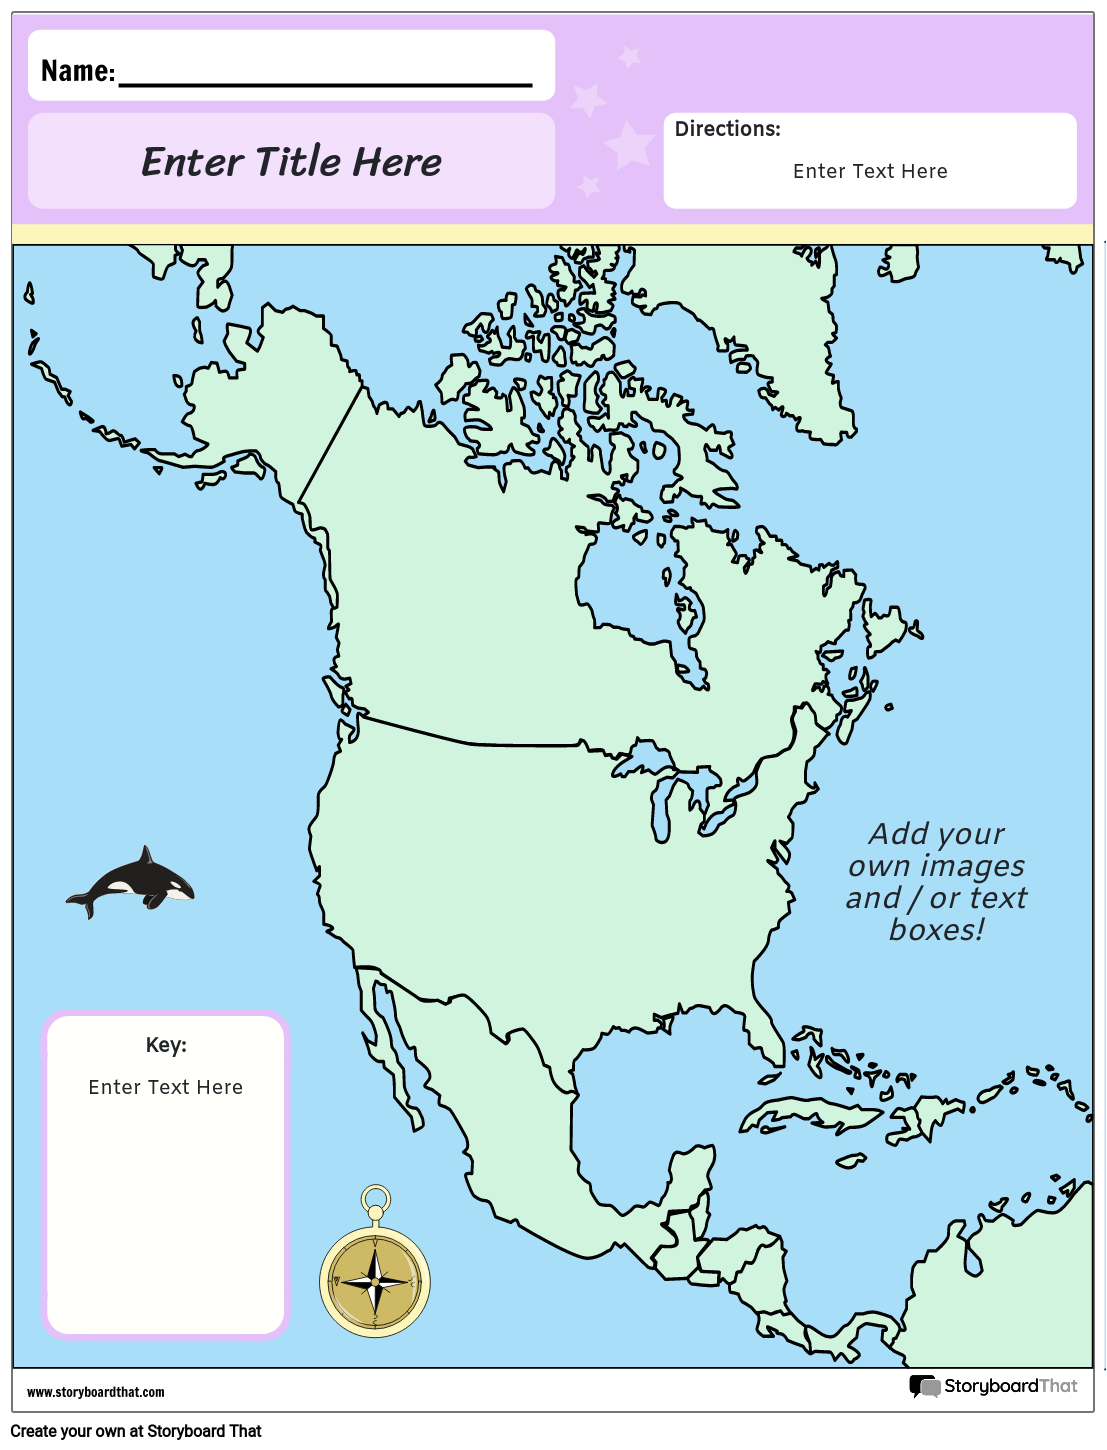 Zemljevid Severne Amerike